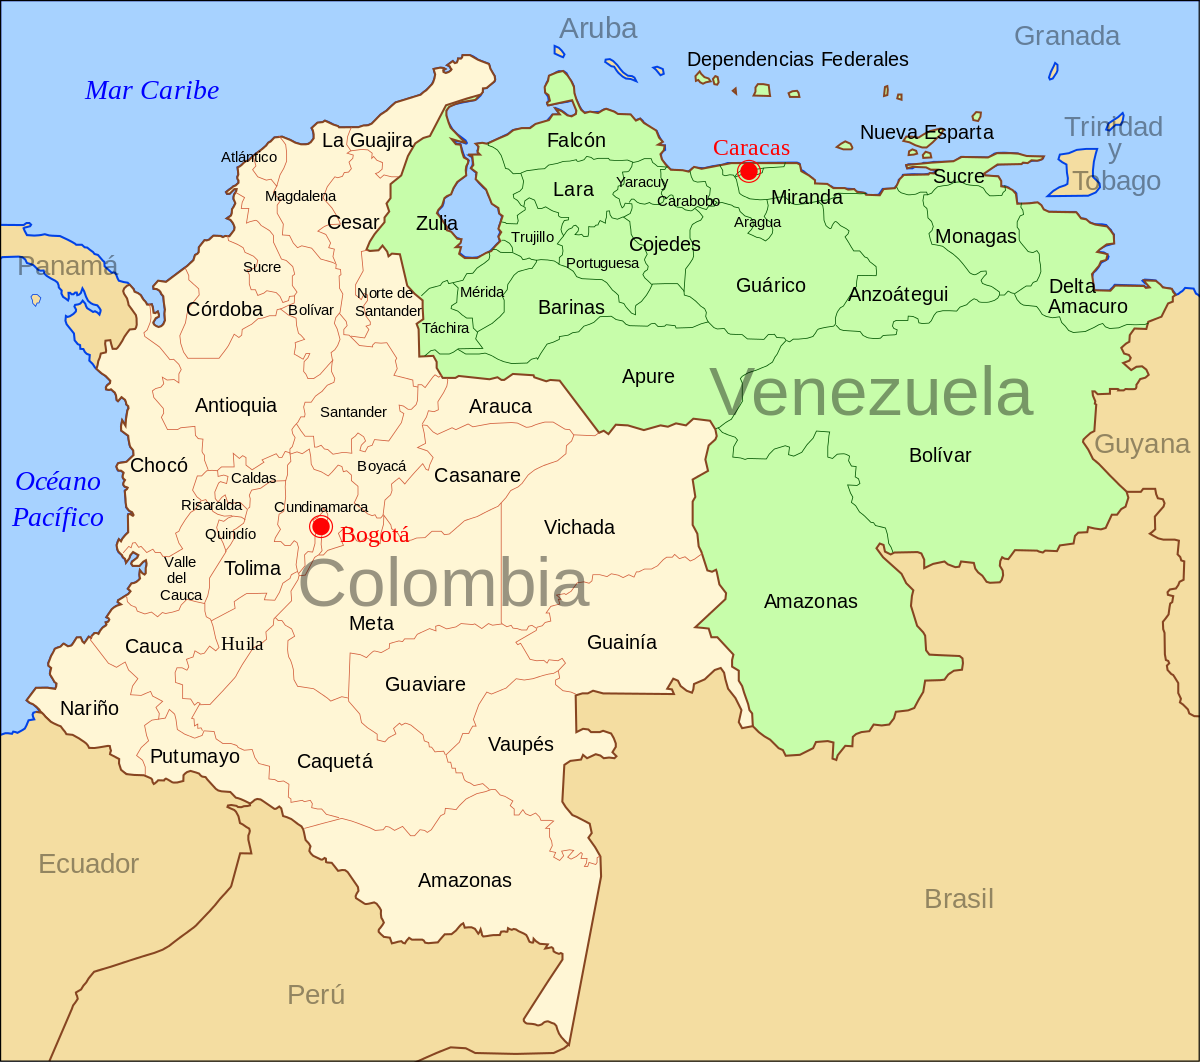 Crisis diplomática entre Colombia y Venezuela de 2010 - Wikipedia ...